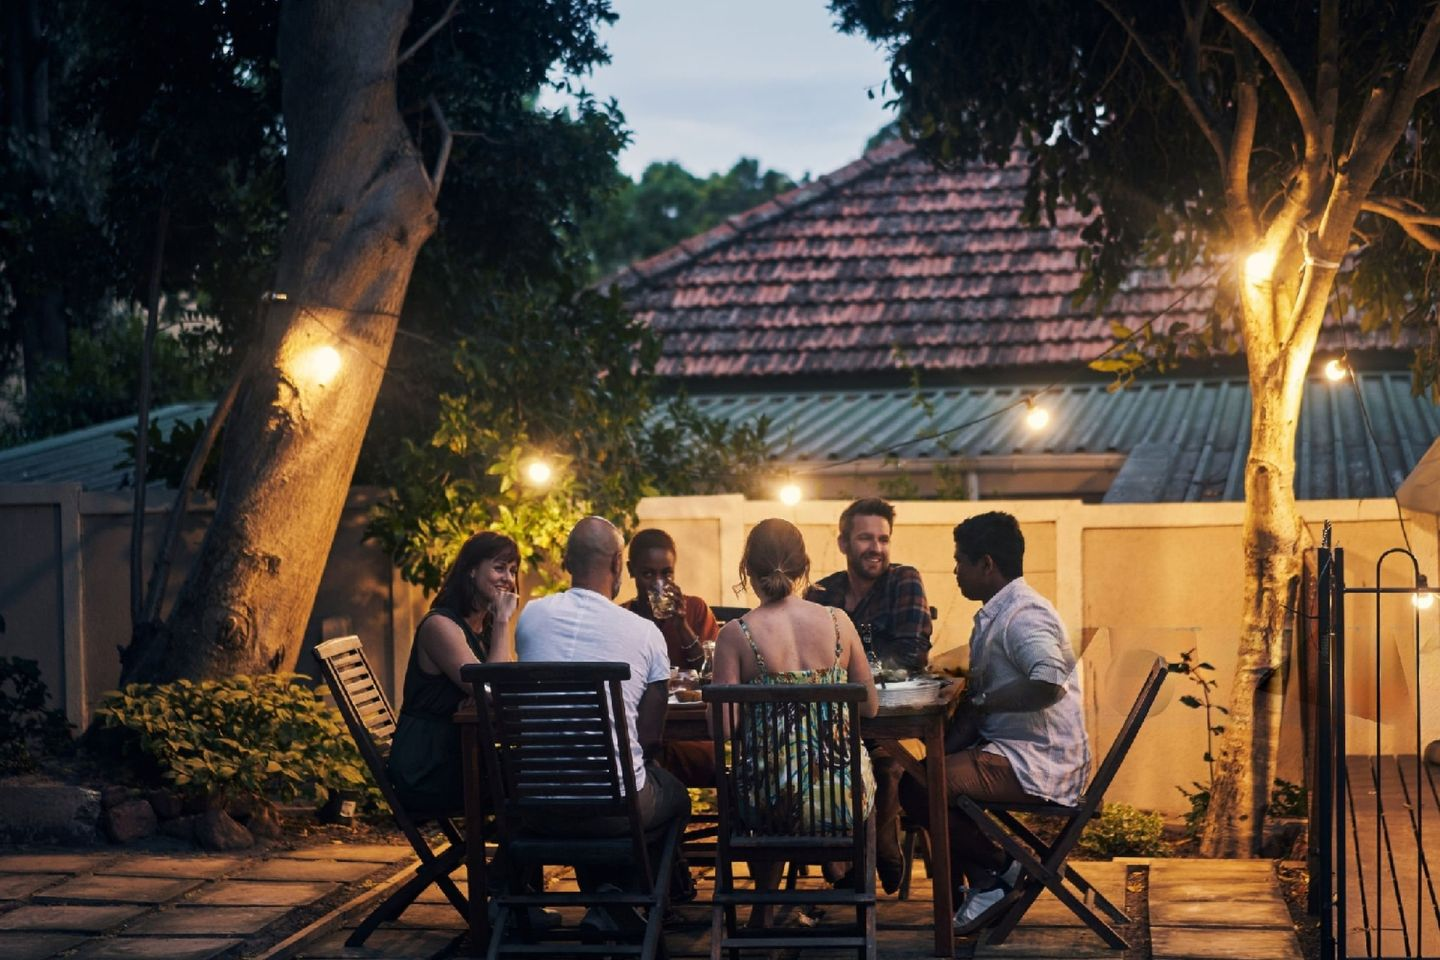 Groupe d'amis souriants et discutant, assis à table sur une terrasse de jardin en bois, sous la lumière d'une guirlande de style guinguette.